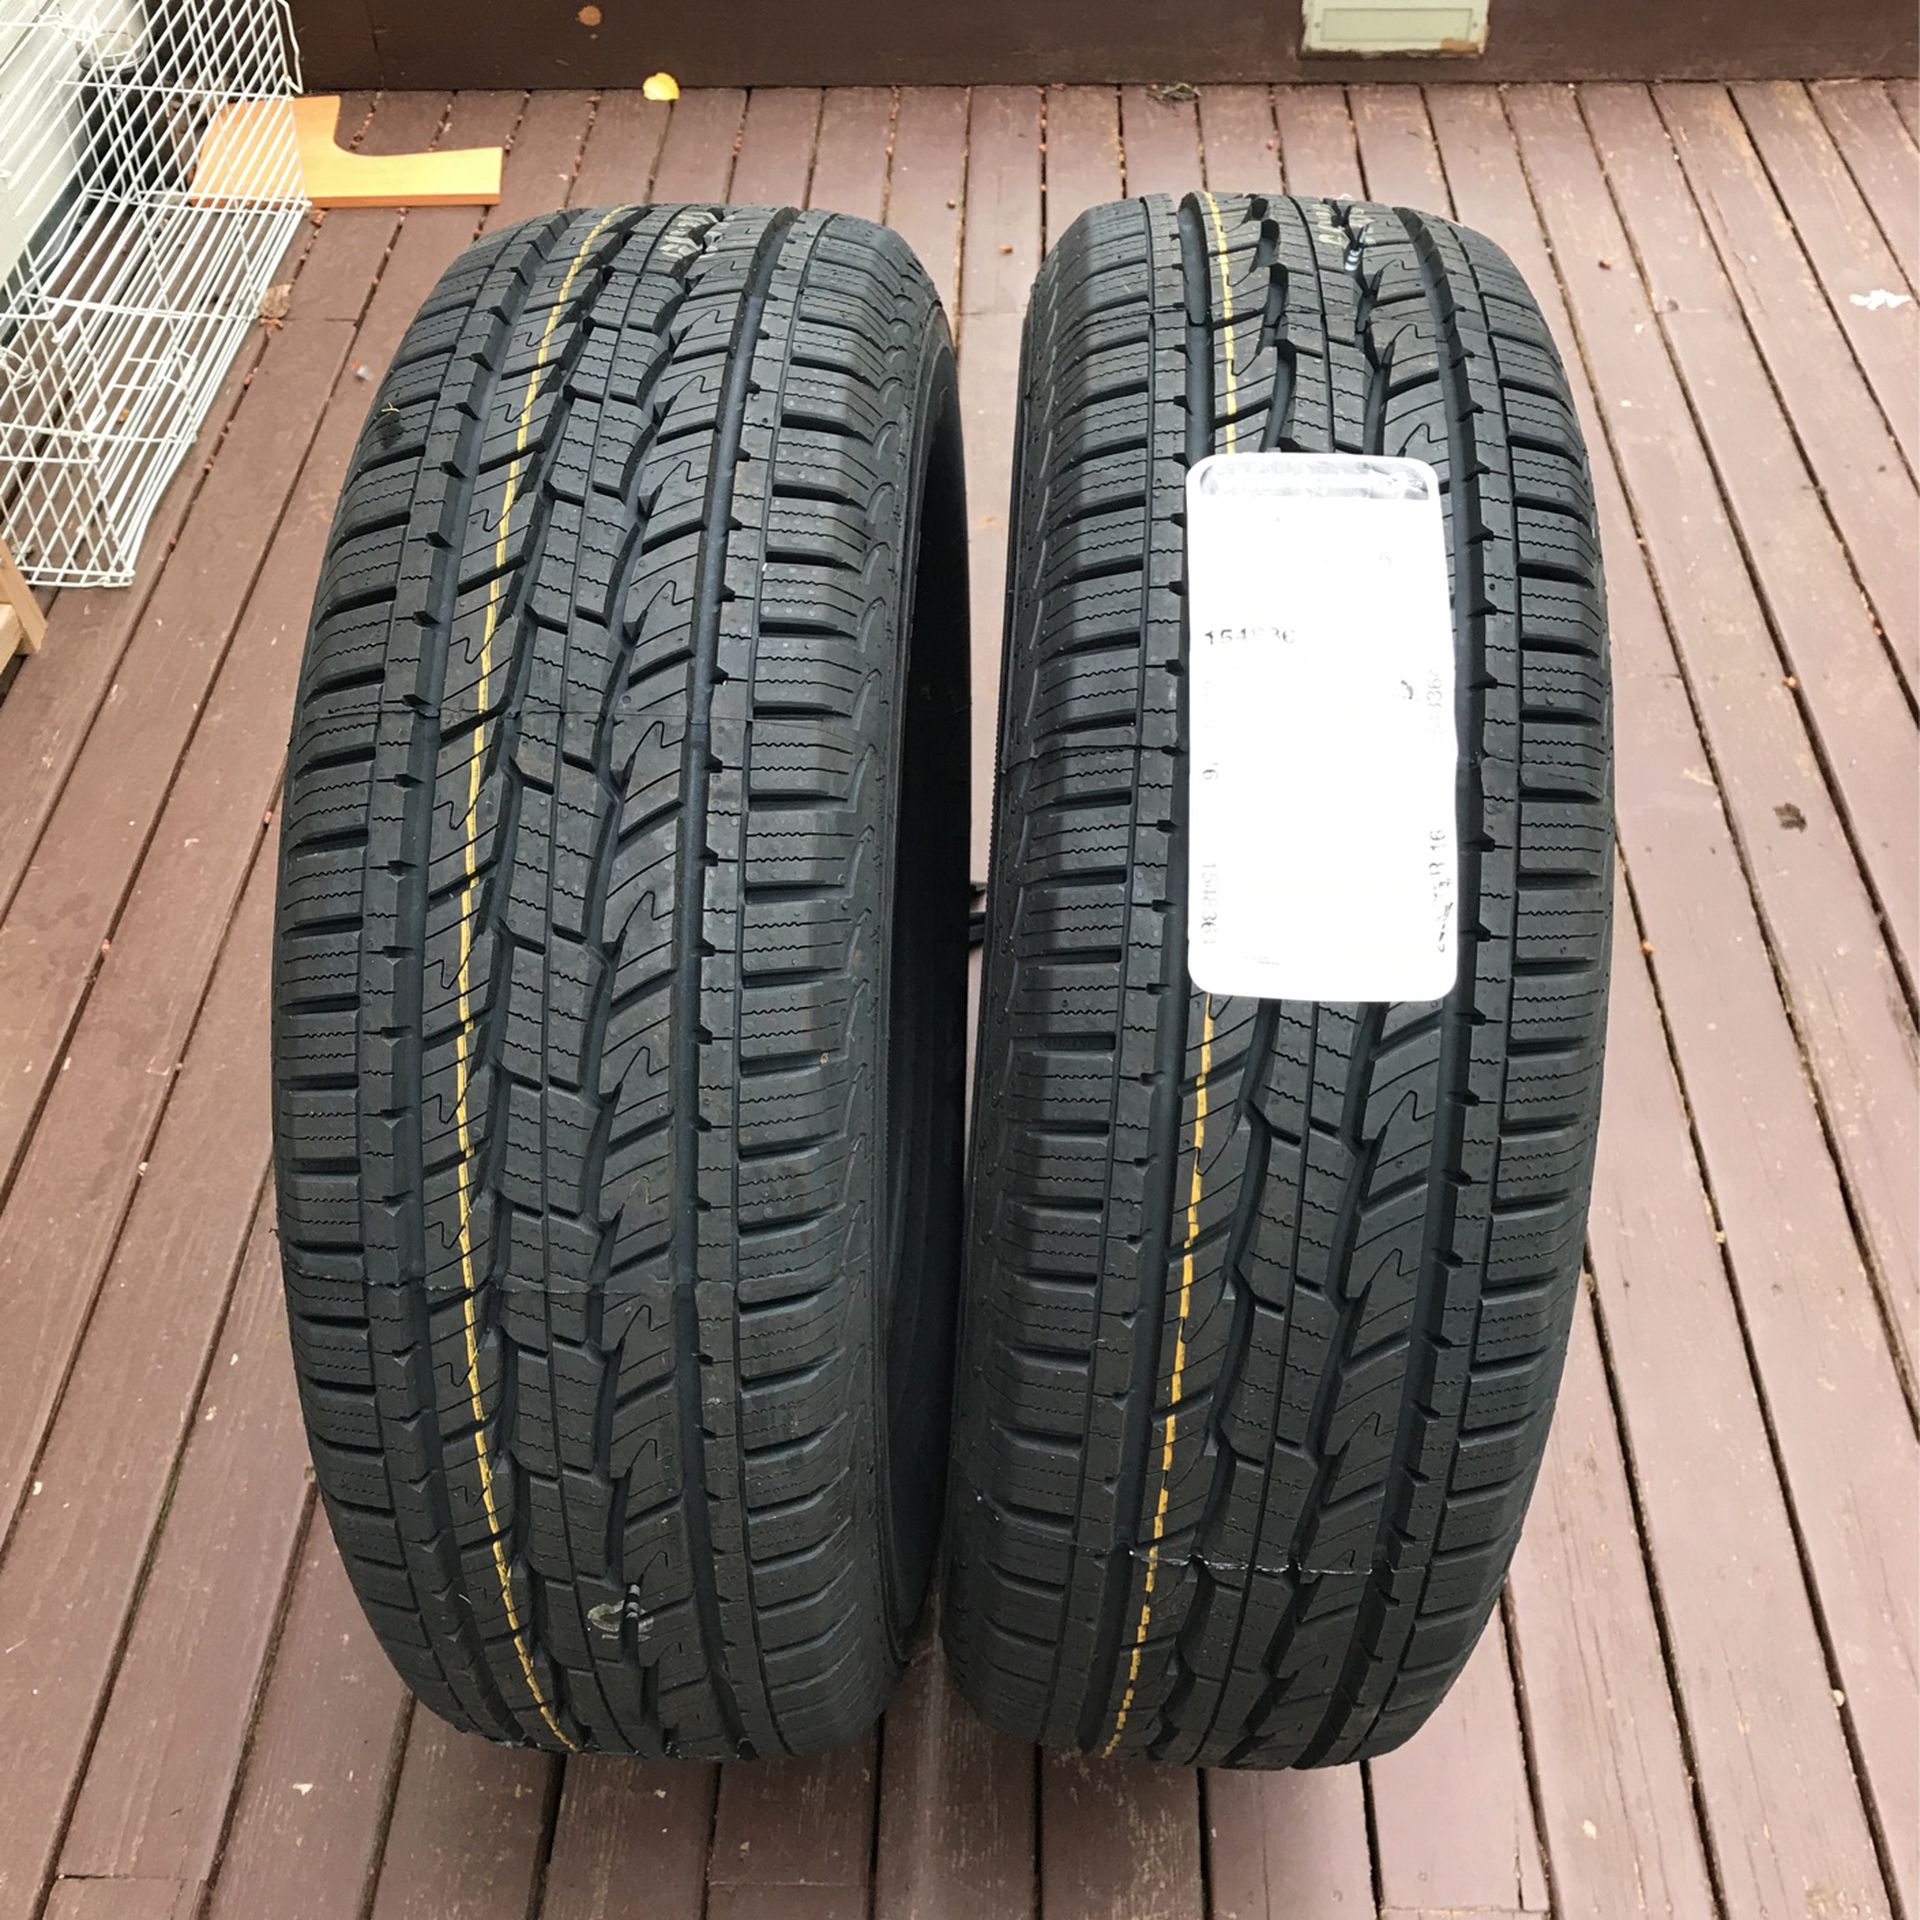 General Tire 245/75R16 $100 each